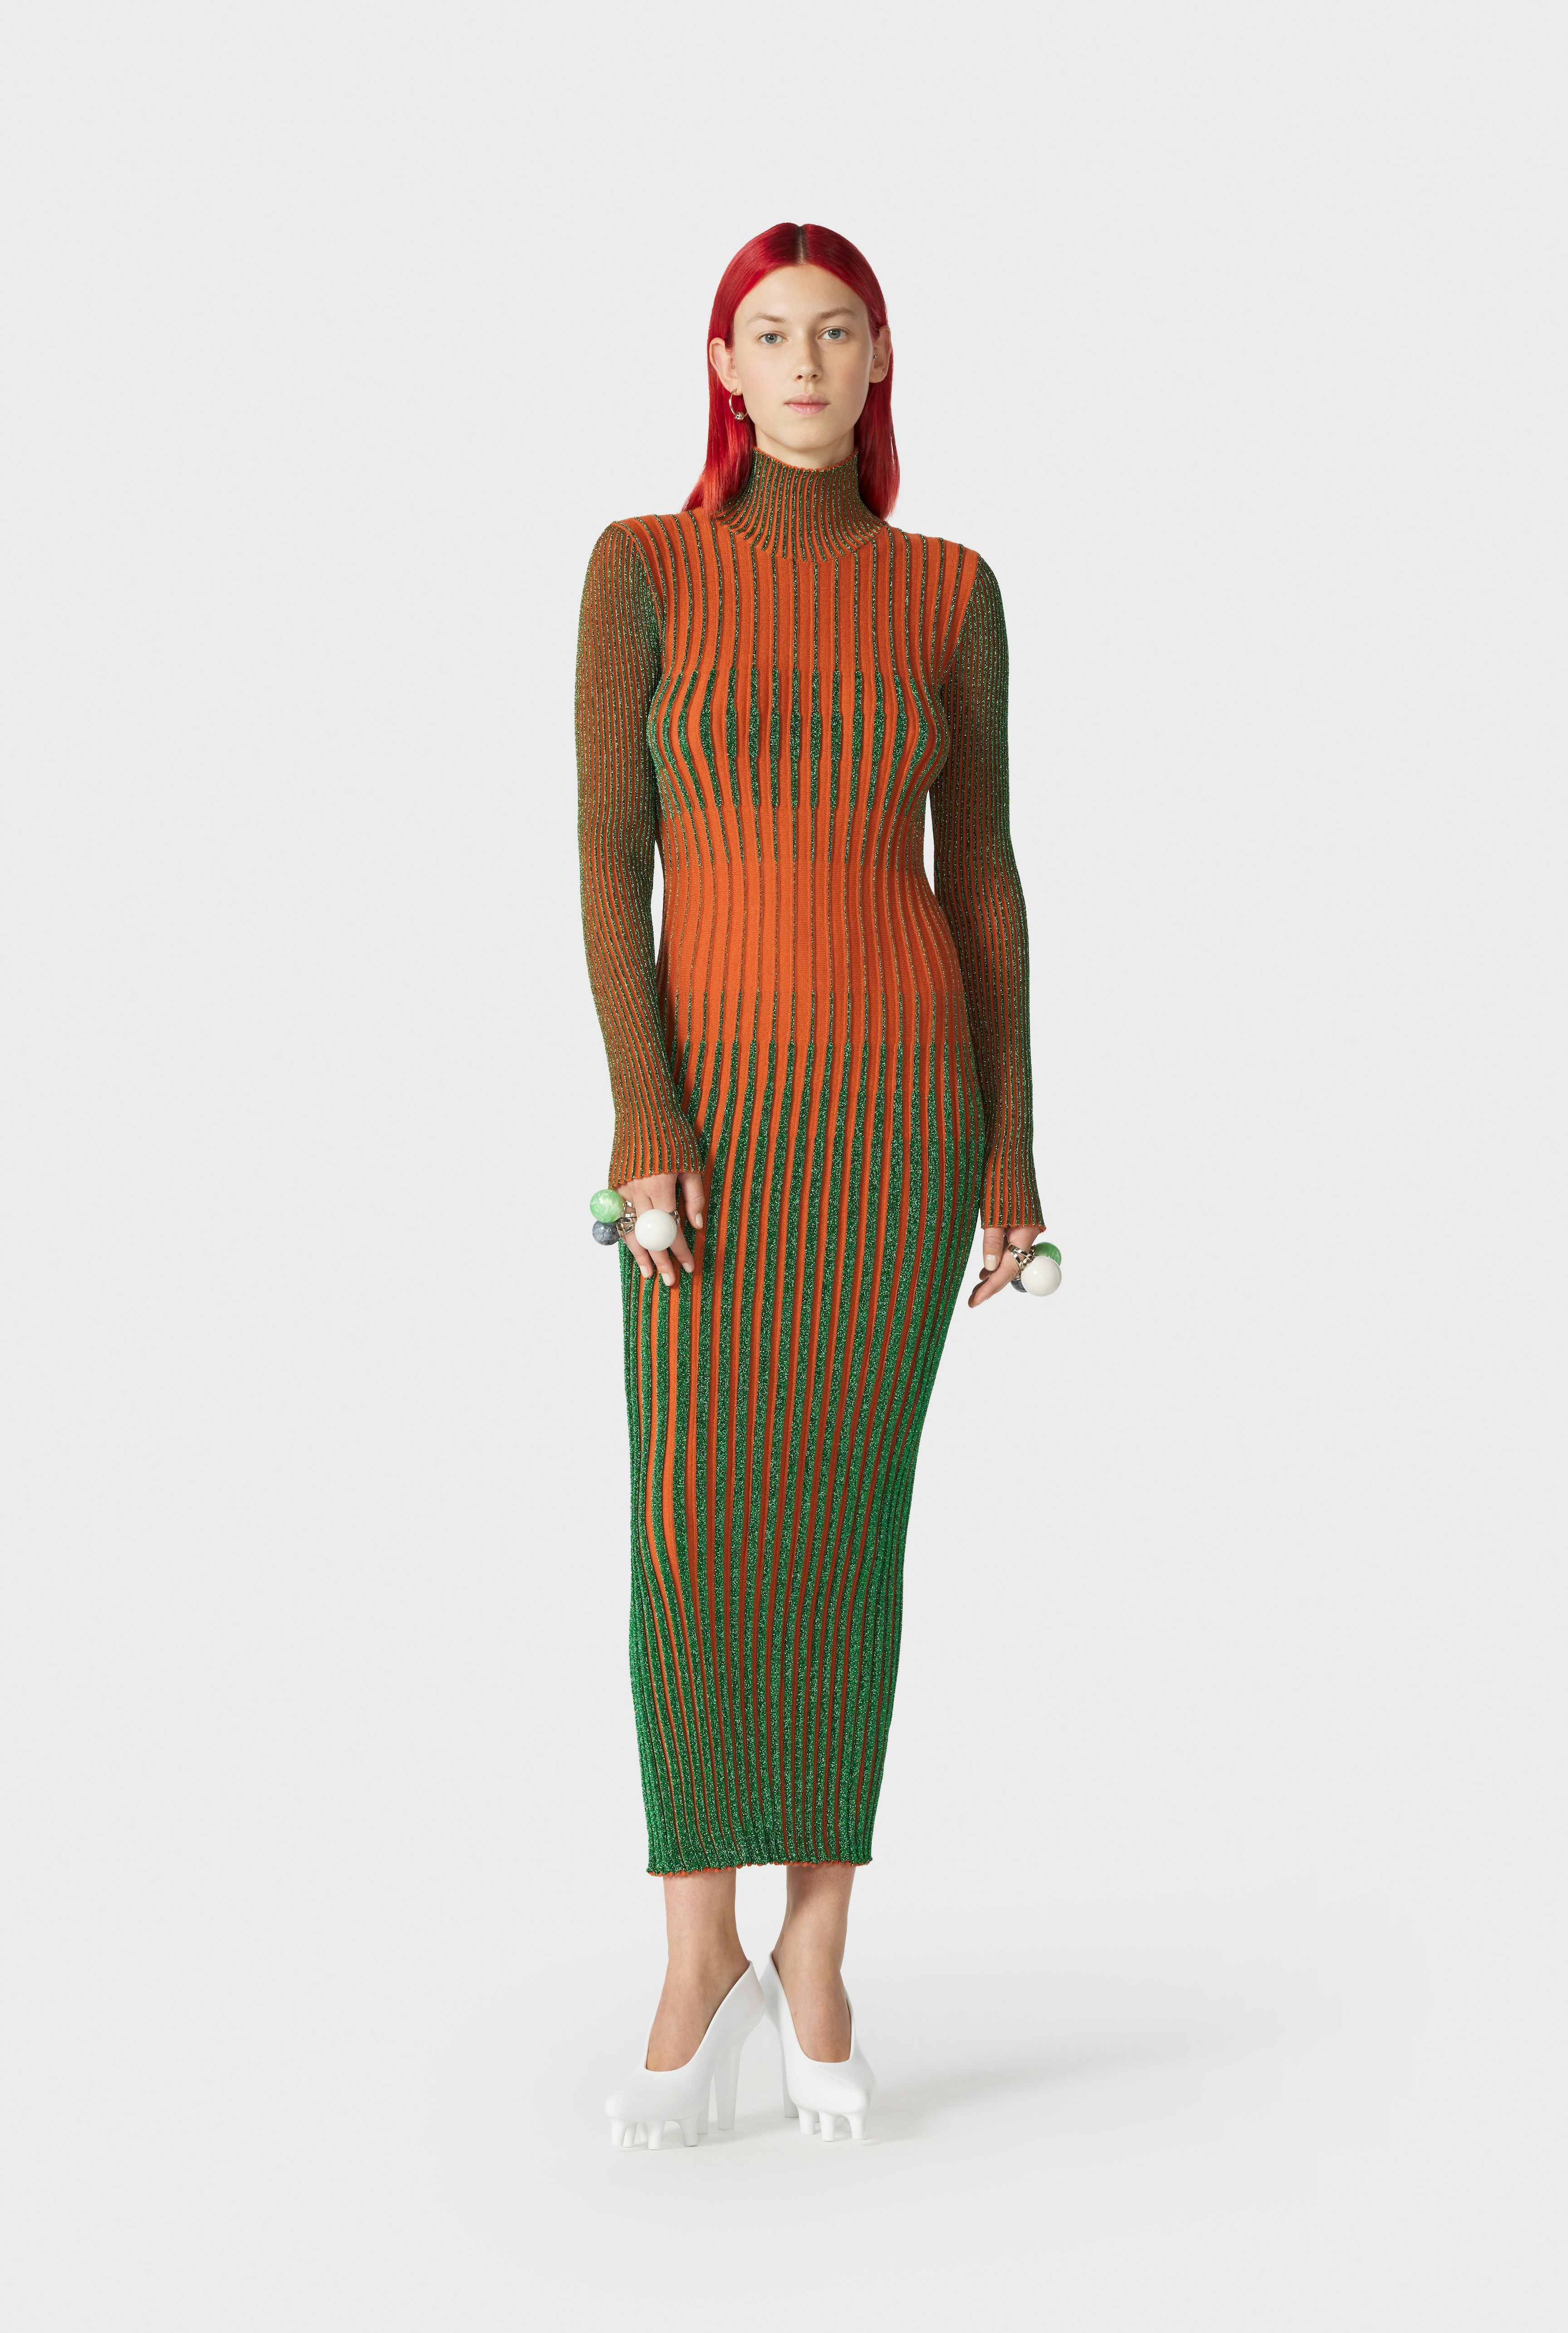 The Orange Cyber Knit Dress Jean Paul Gaultier